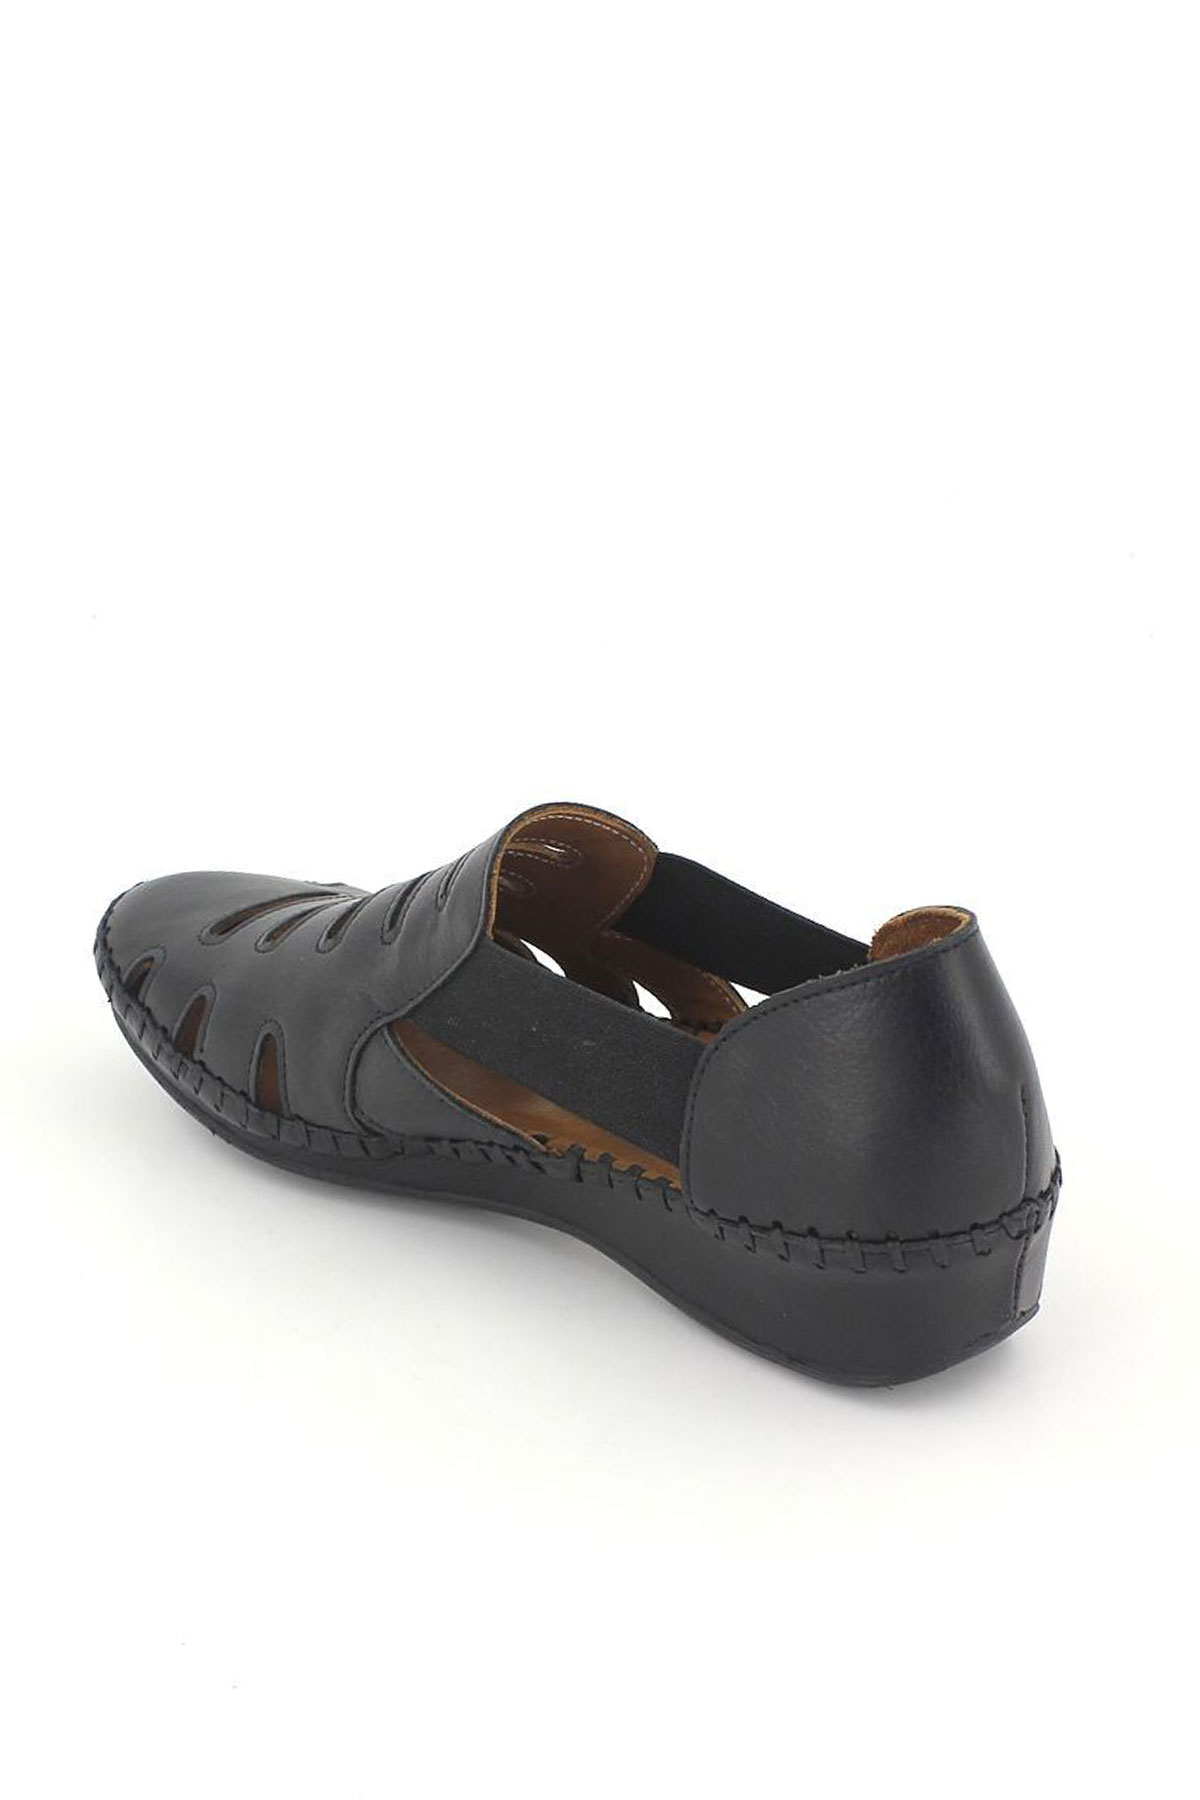 Kadın Comfort Deri Sandalet Siyah 18791395